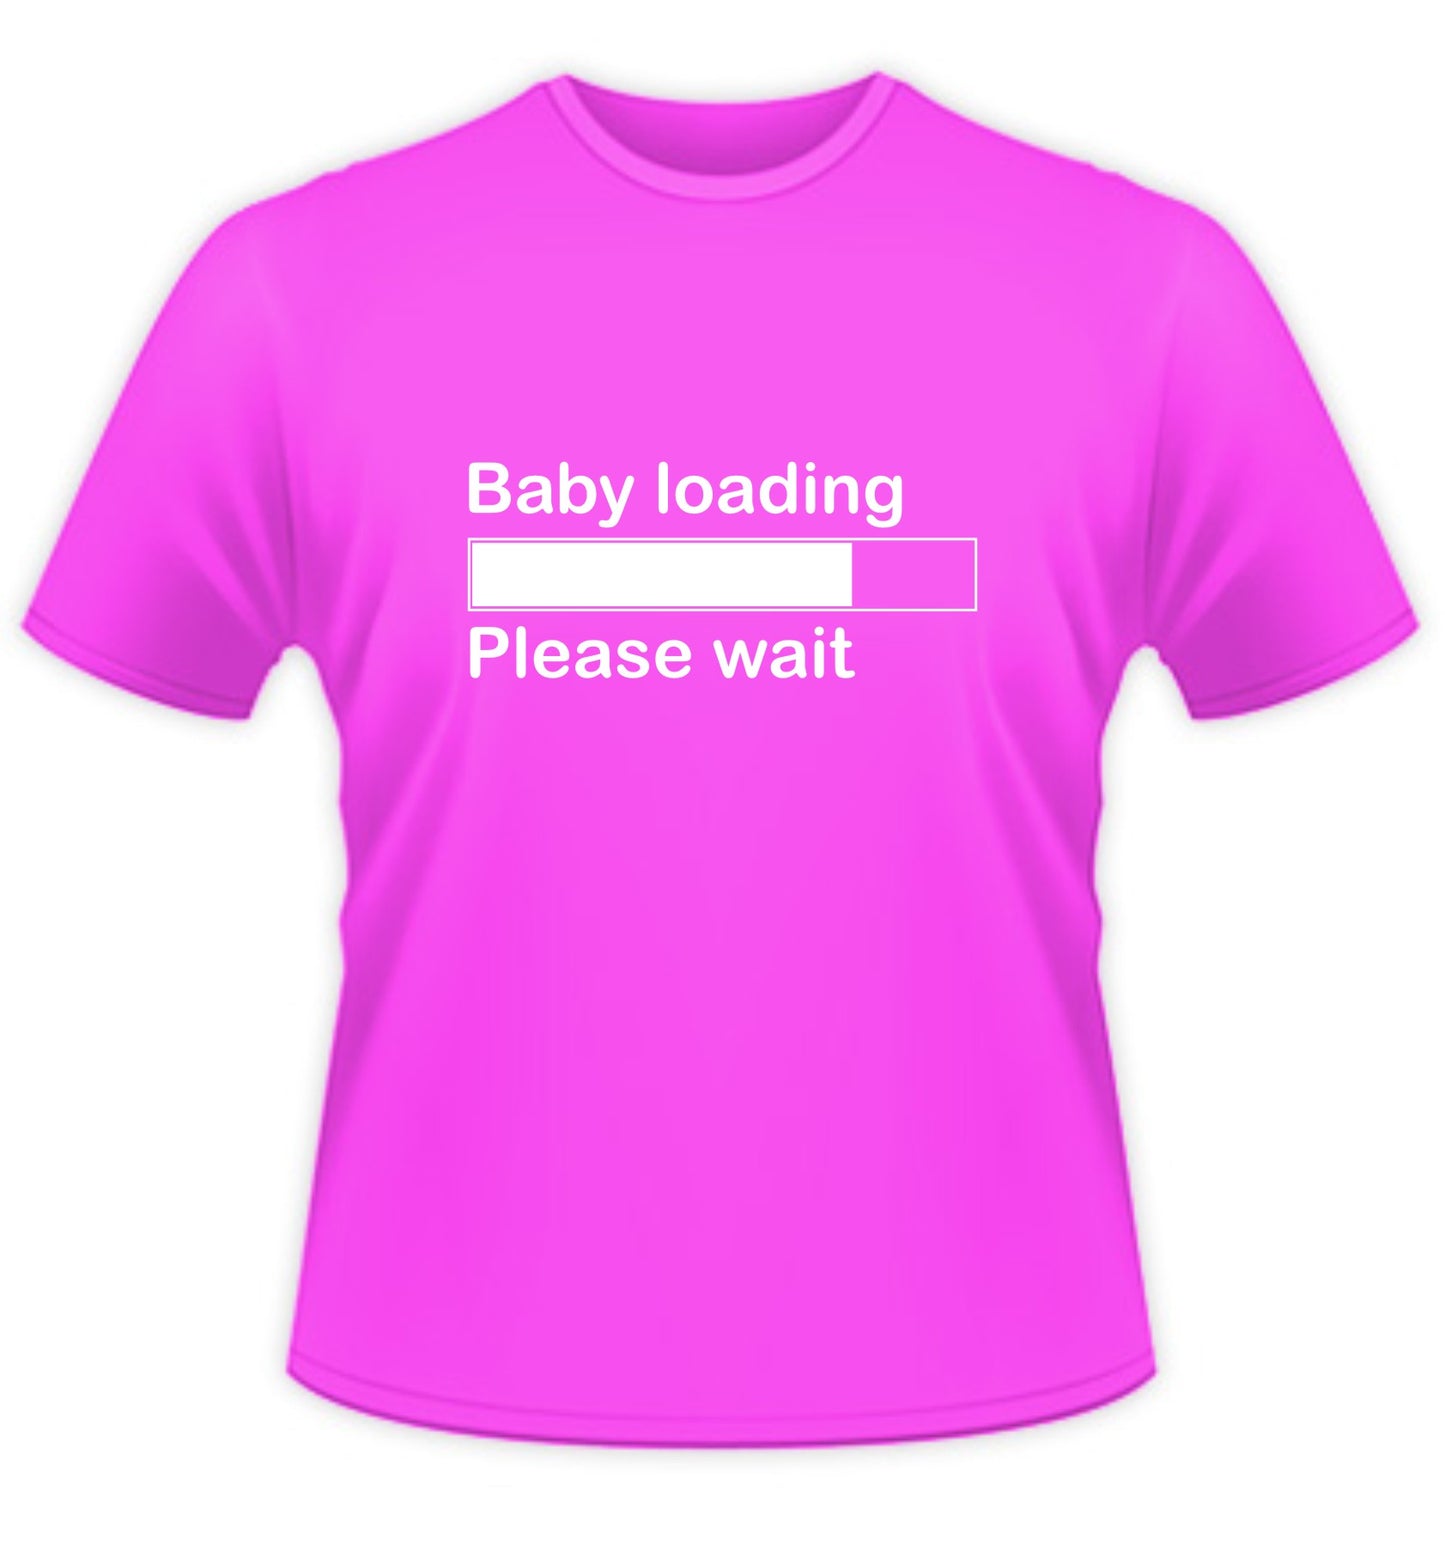 Baby Loading, Please Wait....